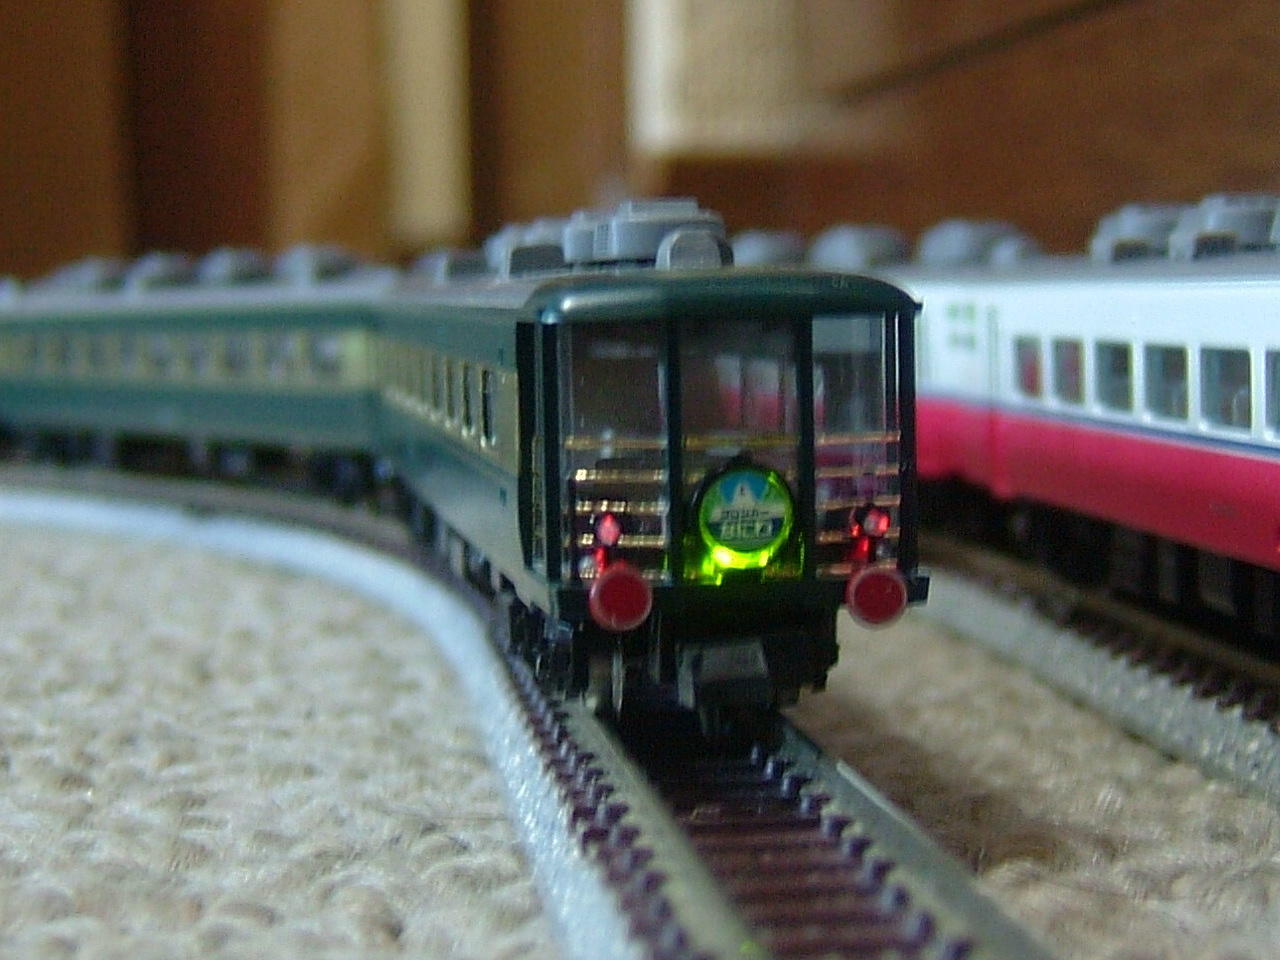 14系JT+リゾート白馬'88と新製品の話題: Mr.Tetsuoの鉄道と芸能界系の 